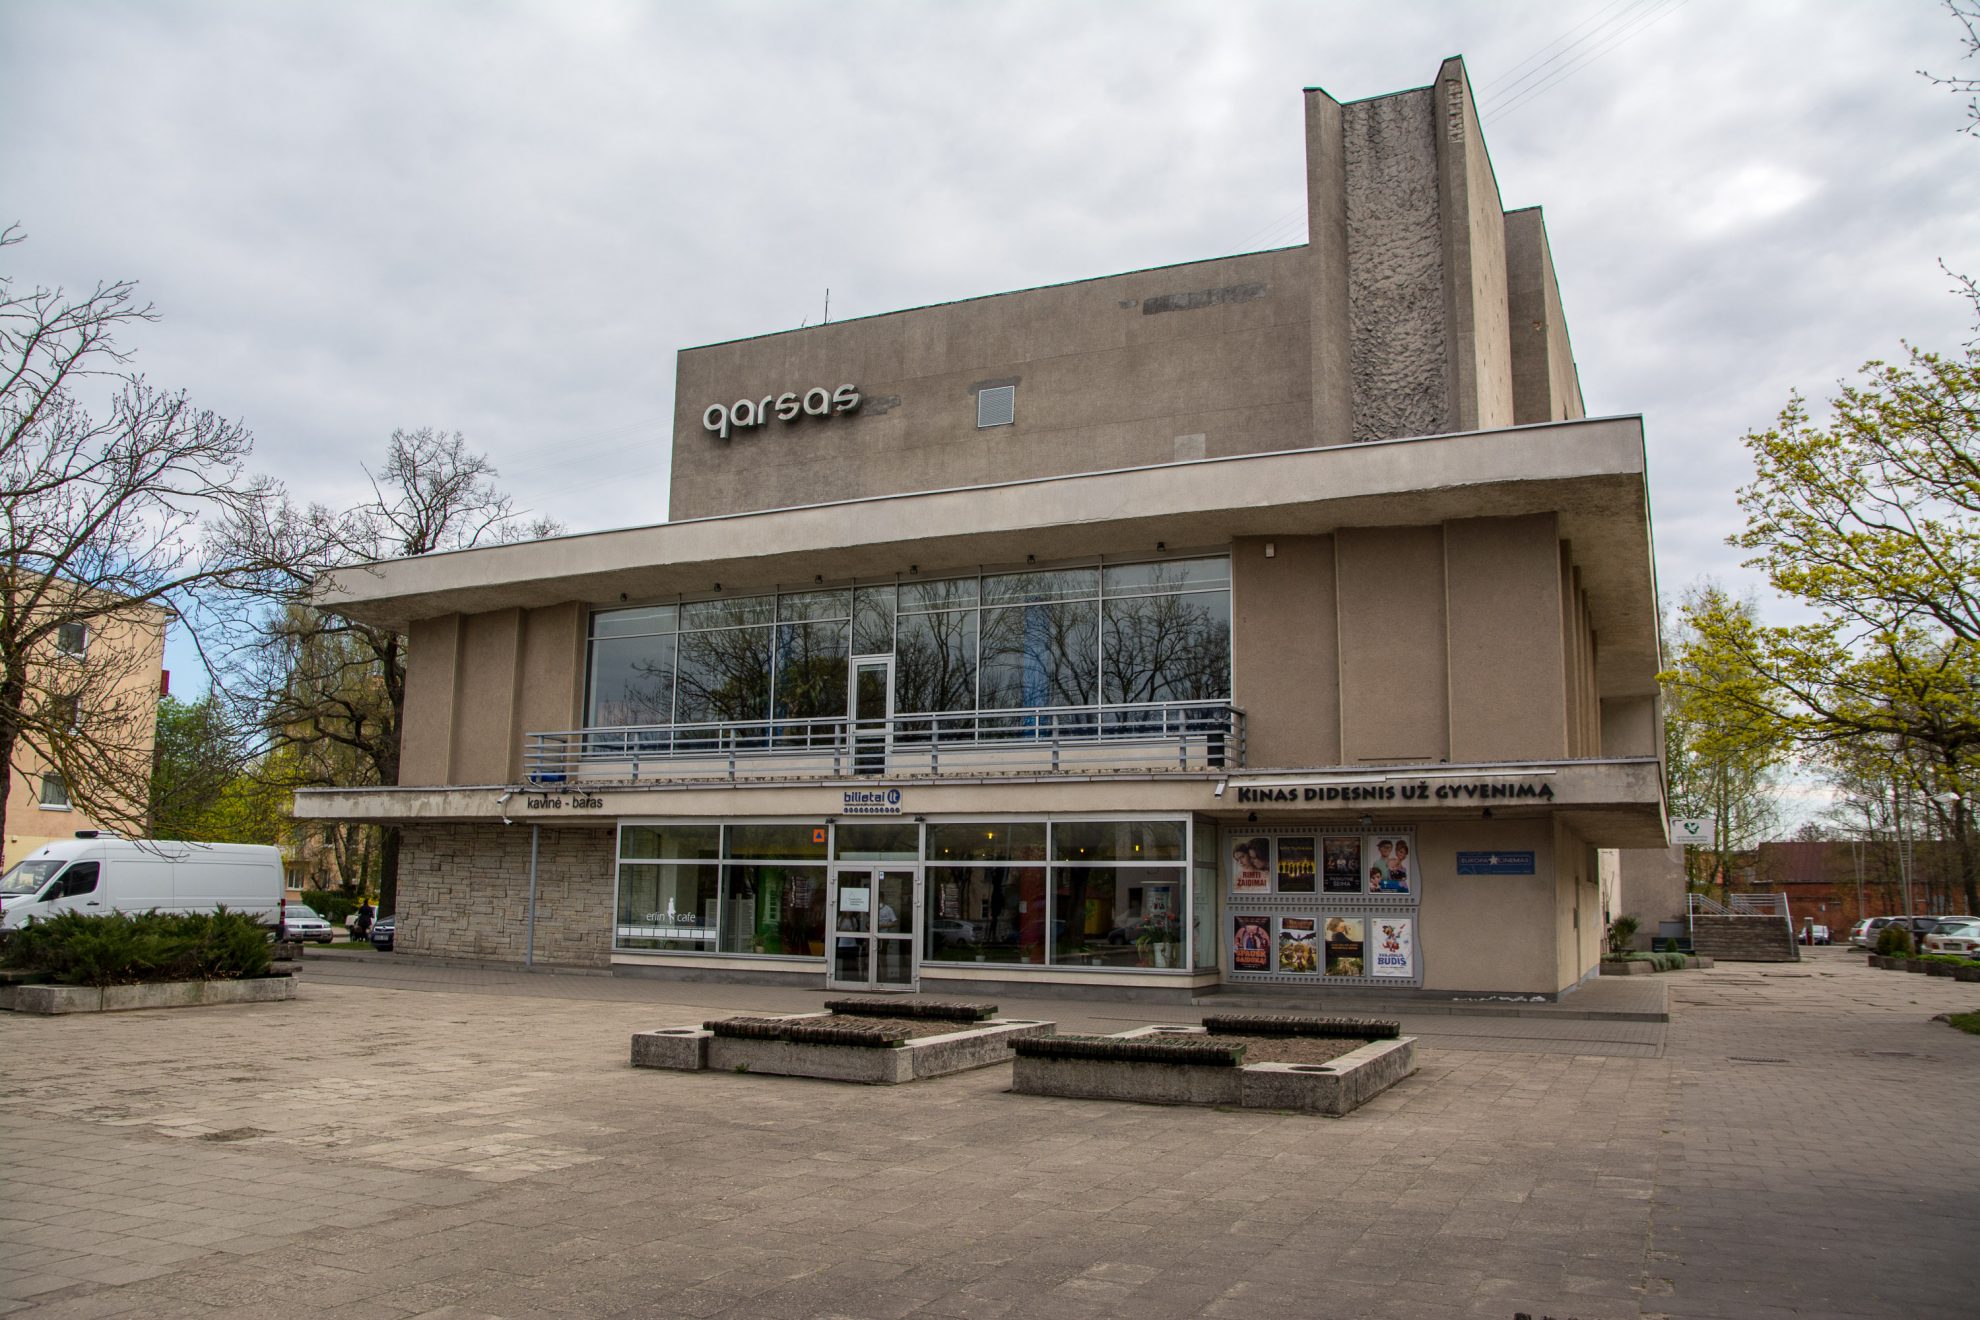 Seniausias Lietuvoje, pernai devyniasdešimtmetį atšventęs Panevėžio kino centras „Garsas“ šį pavasarį išgyvena tikrą renesansą. Aukštaitijos sostinėje užsidarius komercinį kiną rodžiusiam „Forum Cinemas“, išnykusi konkurencija atnešė populiarumą Savivaldybei pavaldžiam kino centrui. Vis dėlto toks pakylėjimas – laikinas. Per trejetą metų „Garsas“ virs menų centru. Grandiozinį virsmą sustabdyti dar tikisi piketą rengiantys panevėžiečiai.